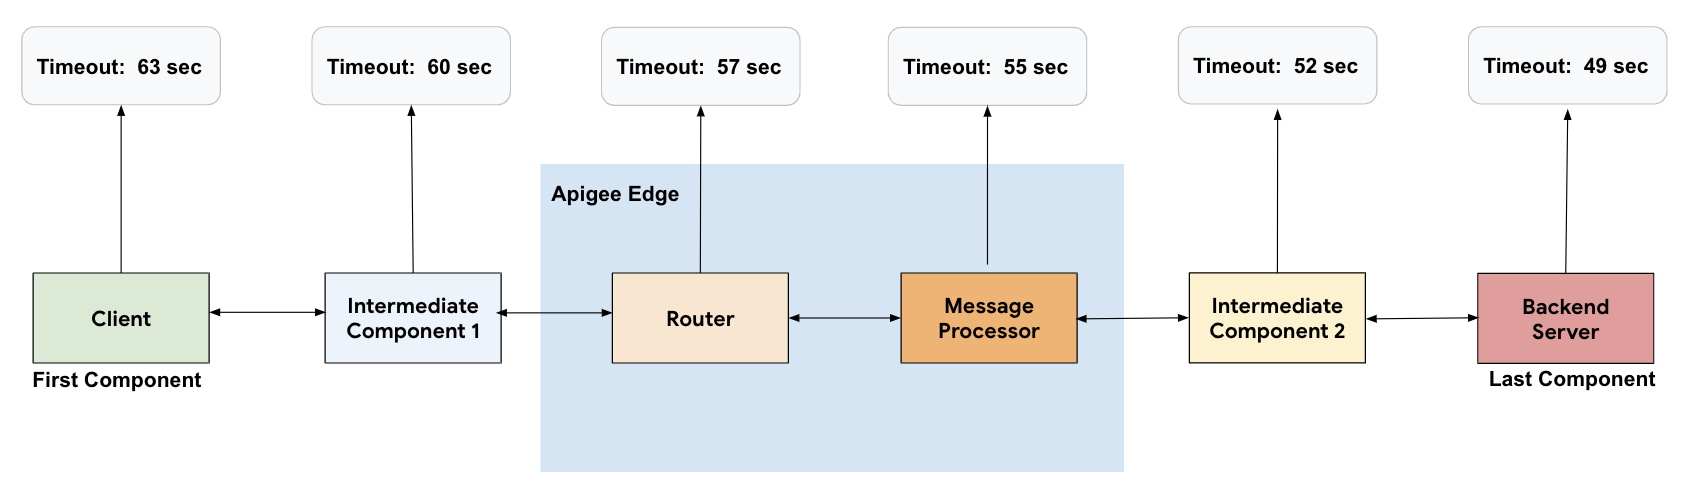 从客户端开始的流程，依次前往中间组件 1、路由器、消息处理器、中间组件 2 和后端服务器